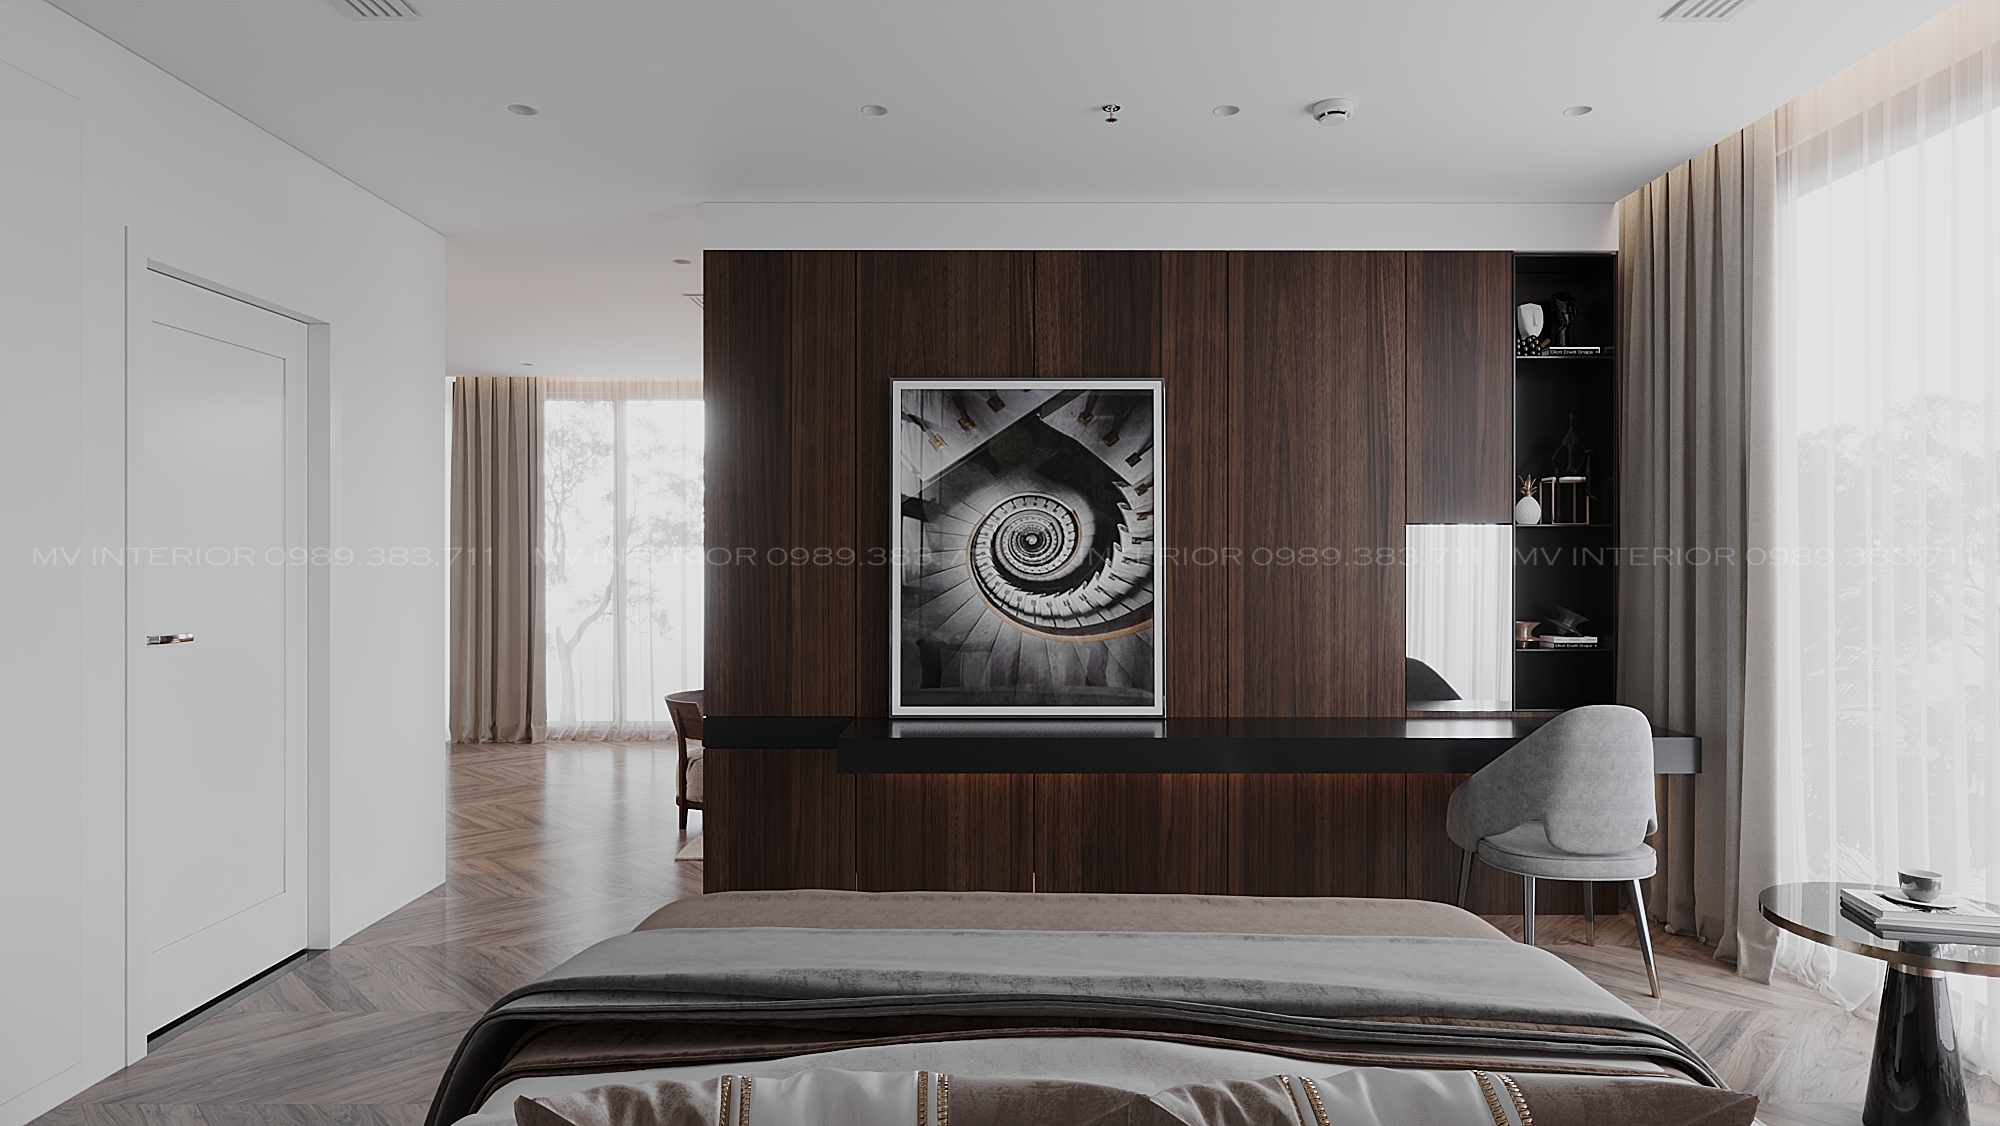 Thiết kế nội thất Resort tại Hà Nội phòng nghỉ dưỡng -Hòa bình 1634474776 1